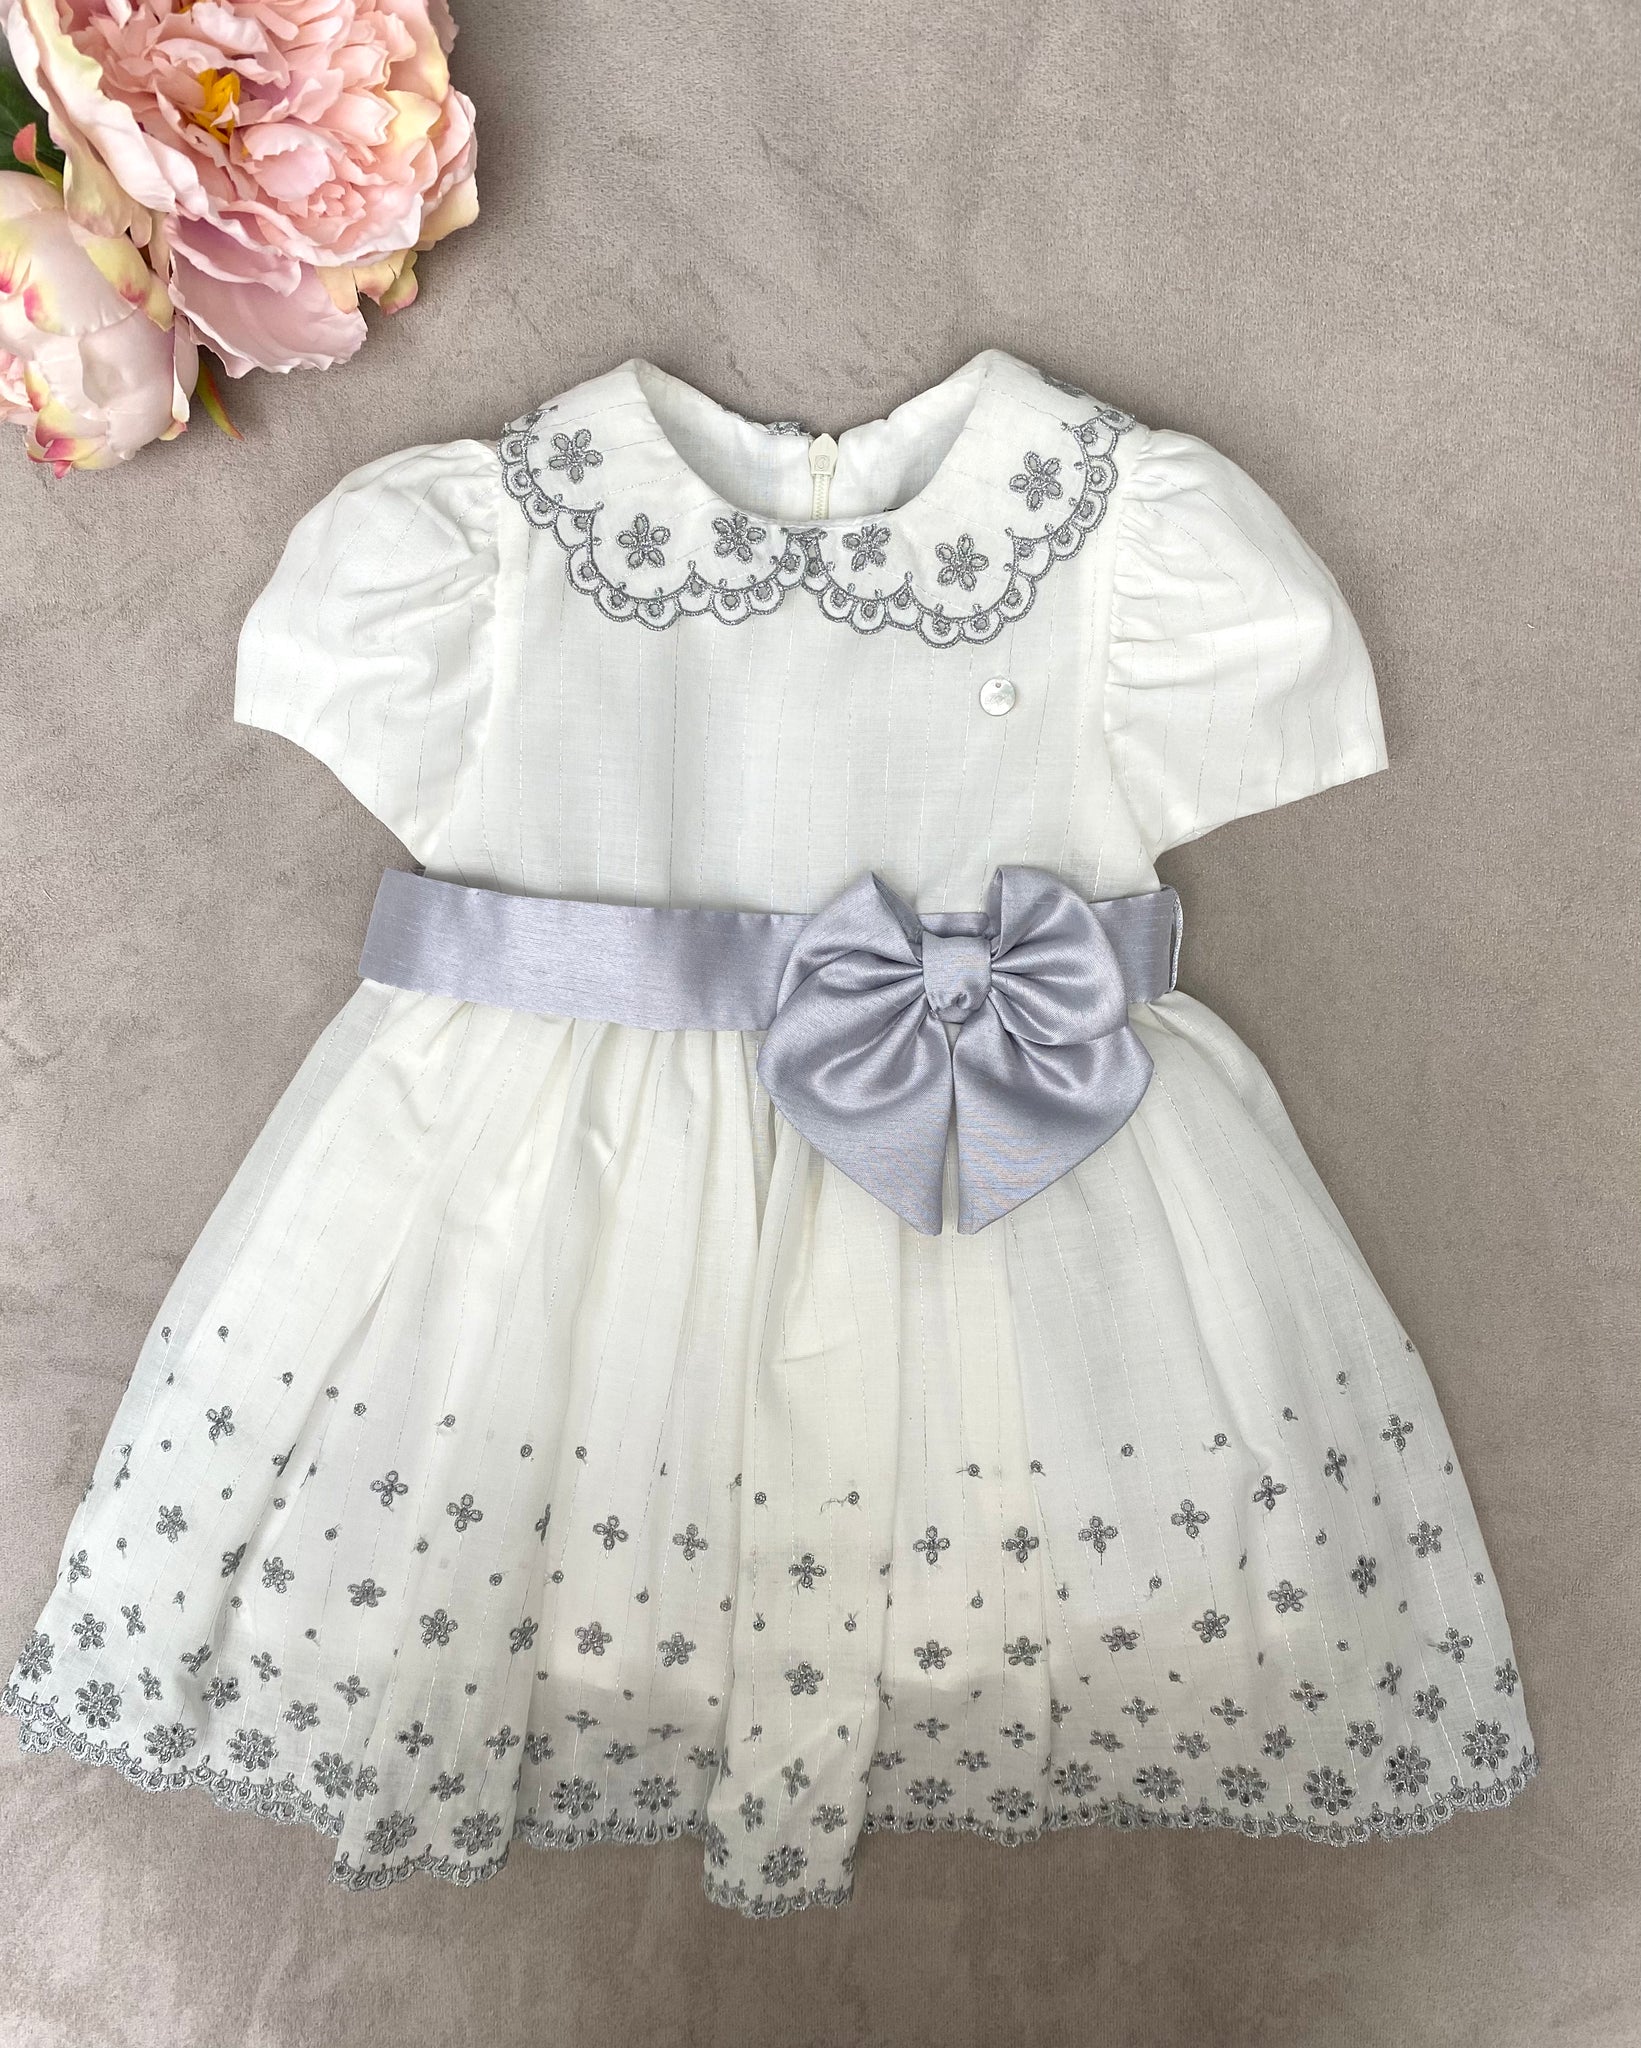 SS22 Piccola Speranza White & Silver Embroidered Dress